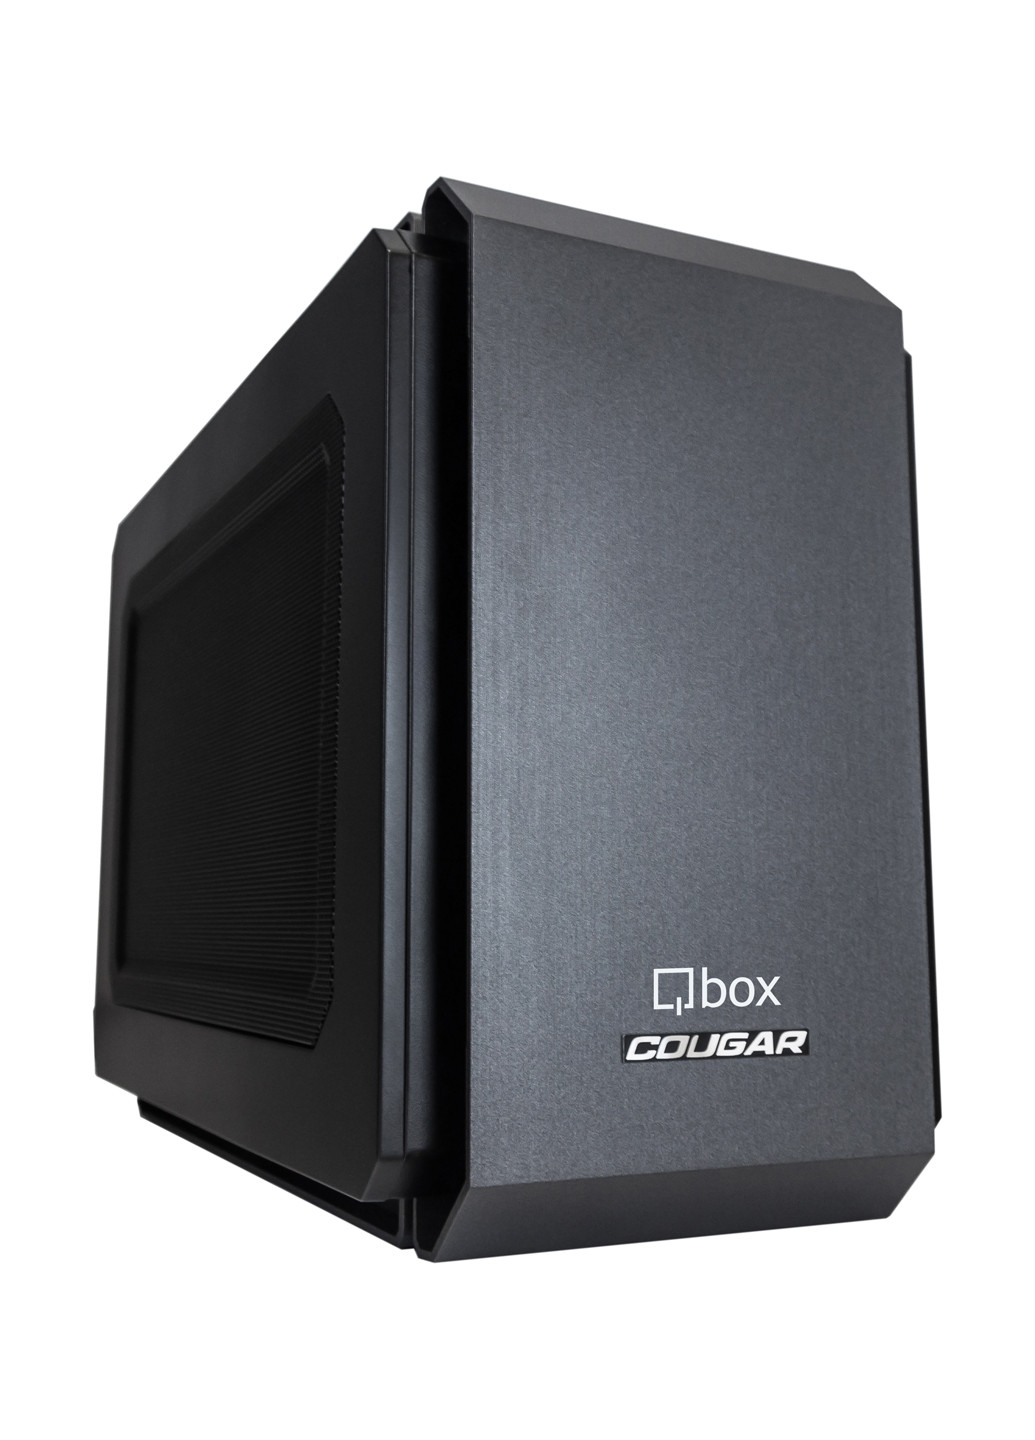 Компьютер I2618 Qbox qbox i2618 (131396731)